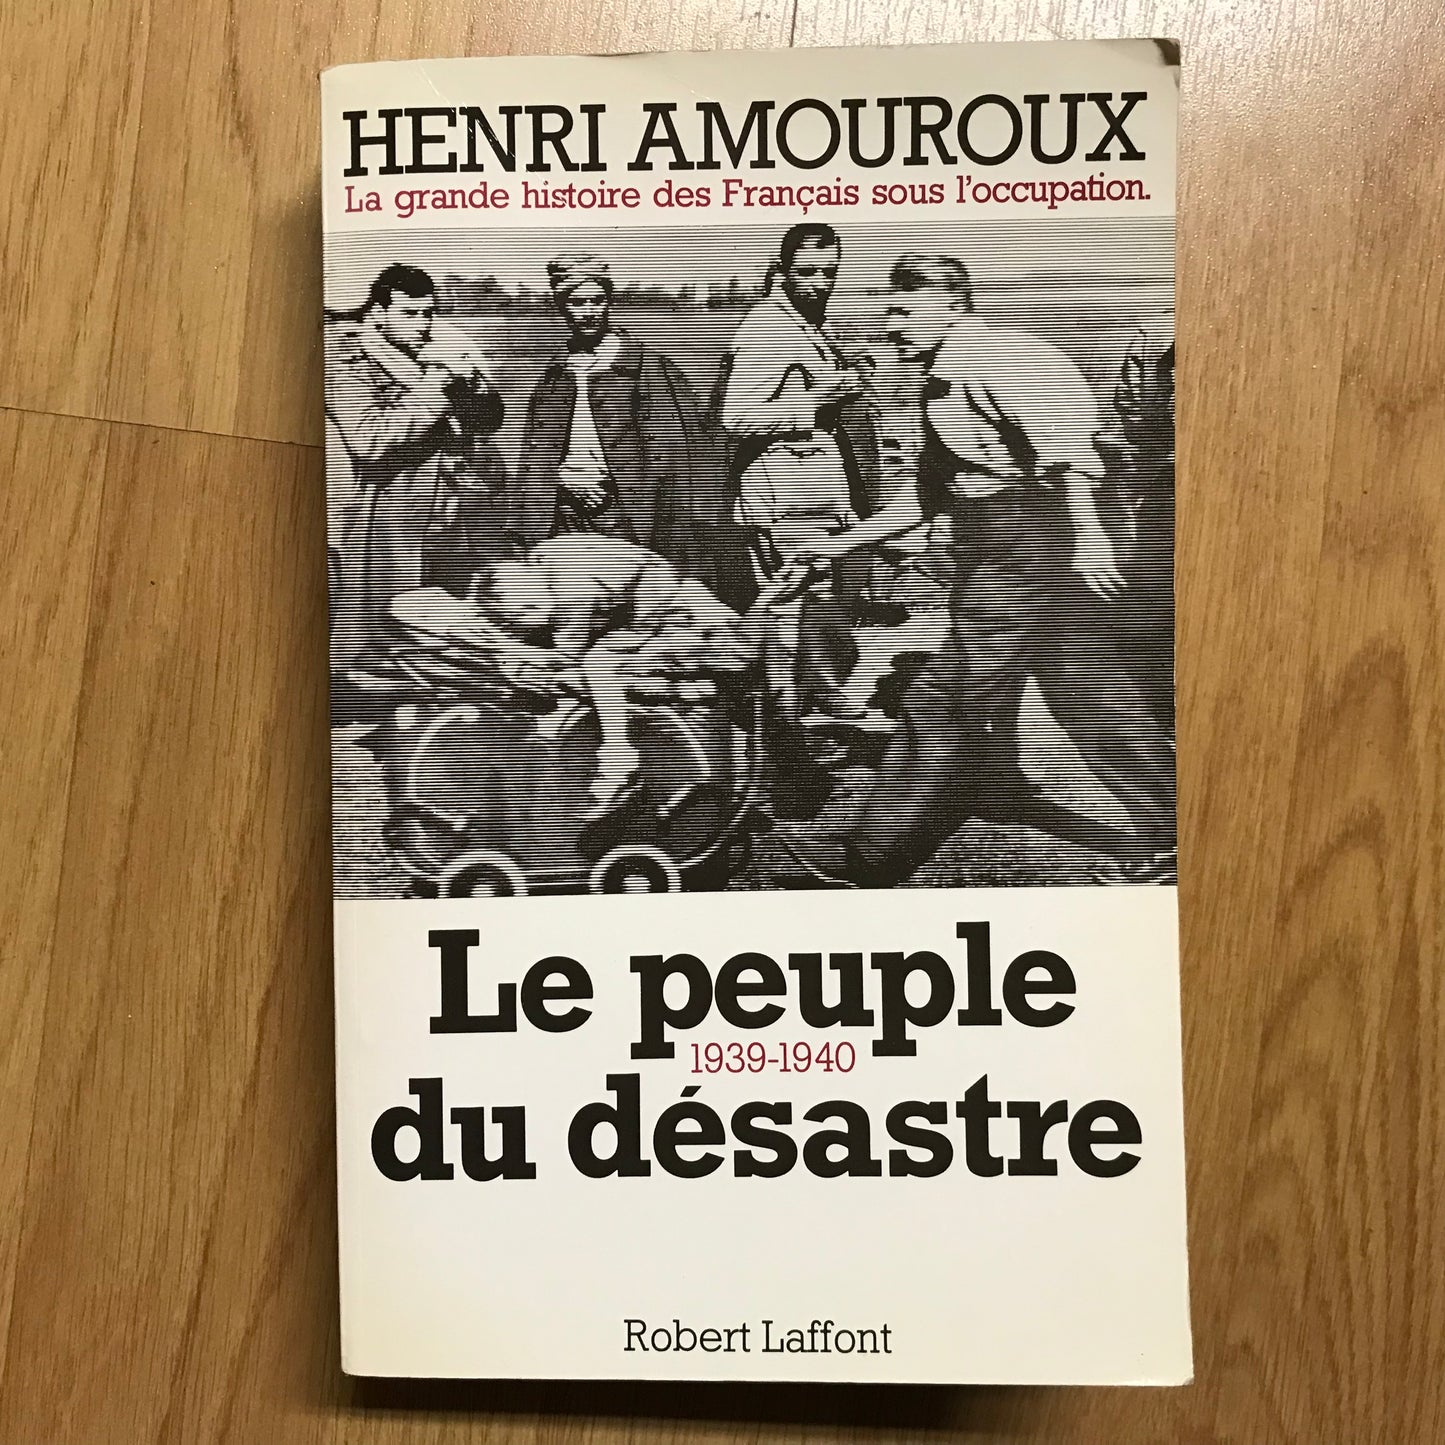 Amouroux, Henri - Le peuple du désastre 1939-1940